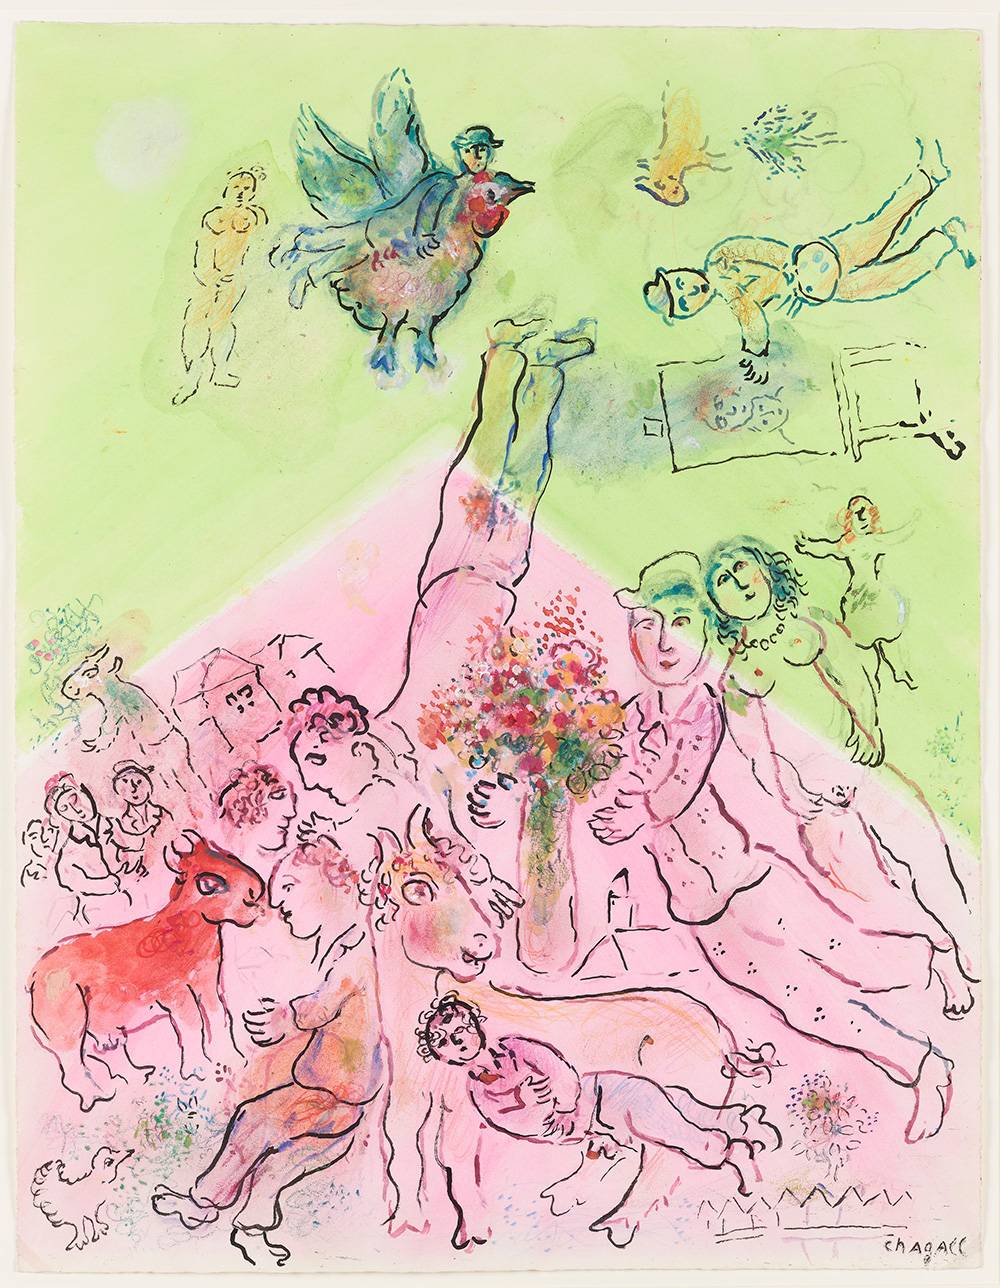 Marc Chagall (1887–1985), Scena fantastyczna na różowo-zielonym tle, Muzeum Narodowe w Warszawie, fot. Igor Oleś / Muzeum Narodowe w Warszawie